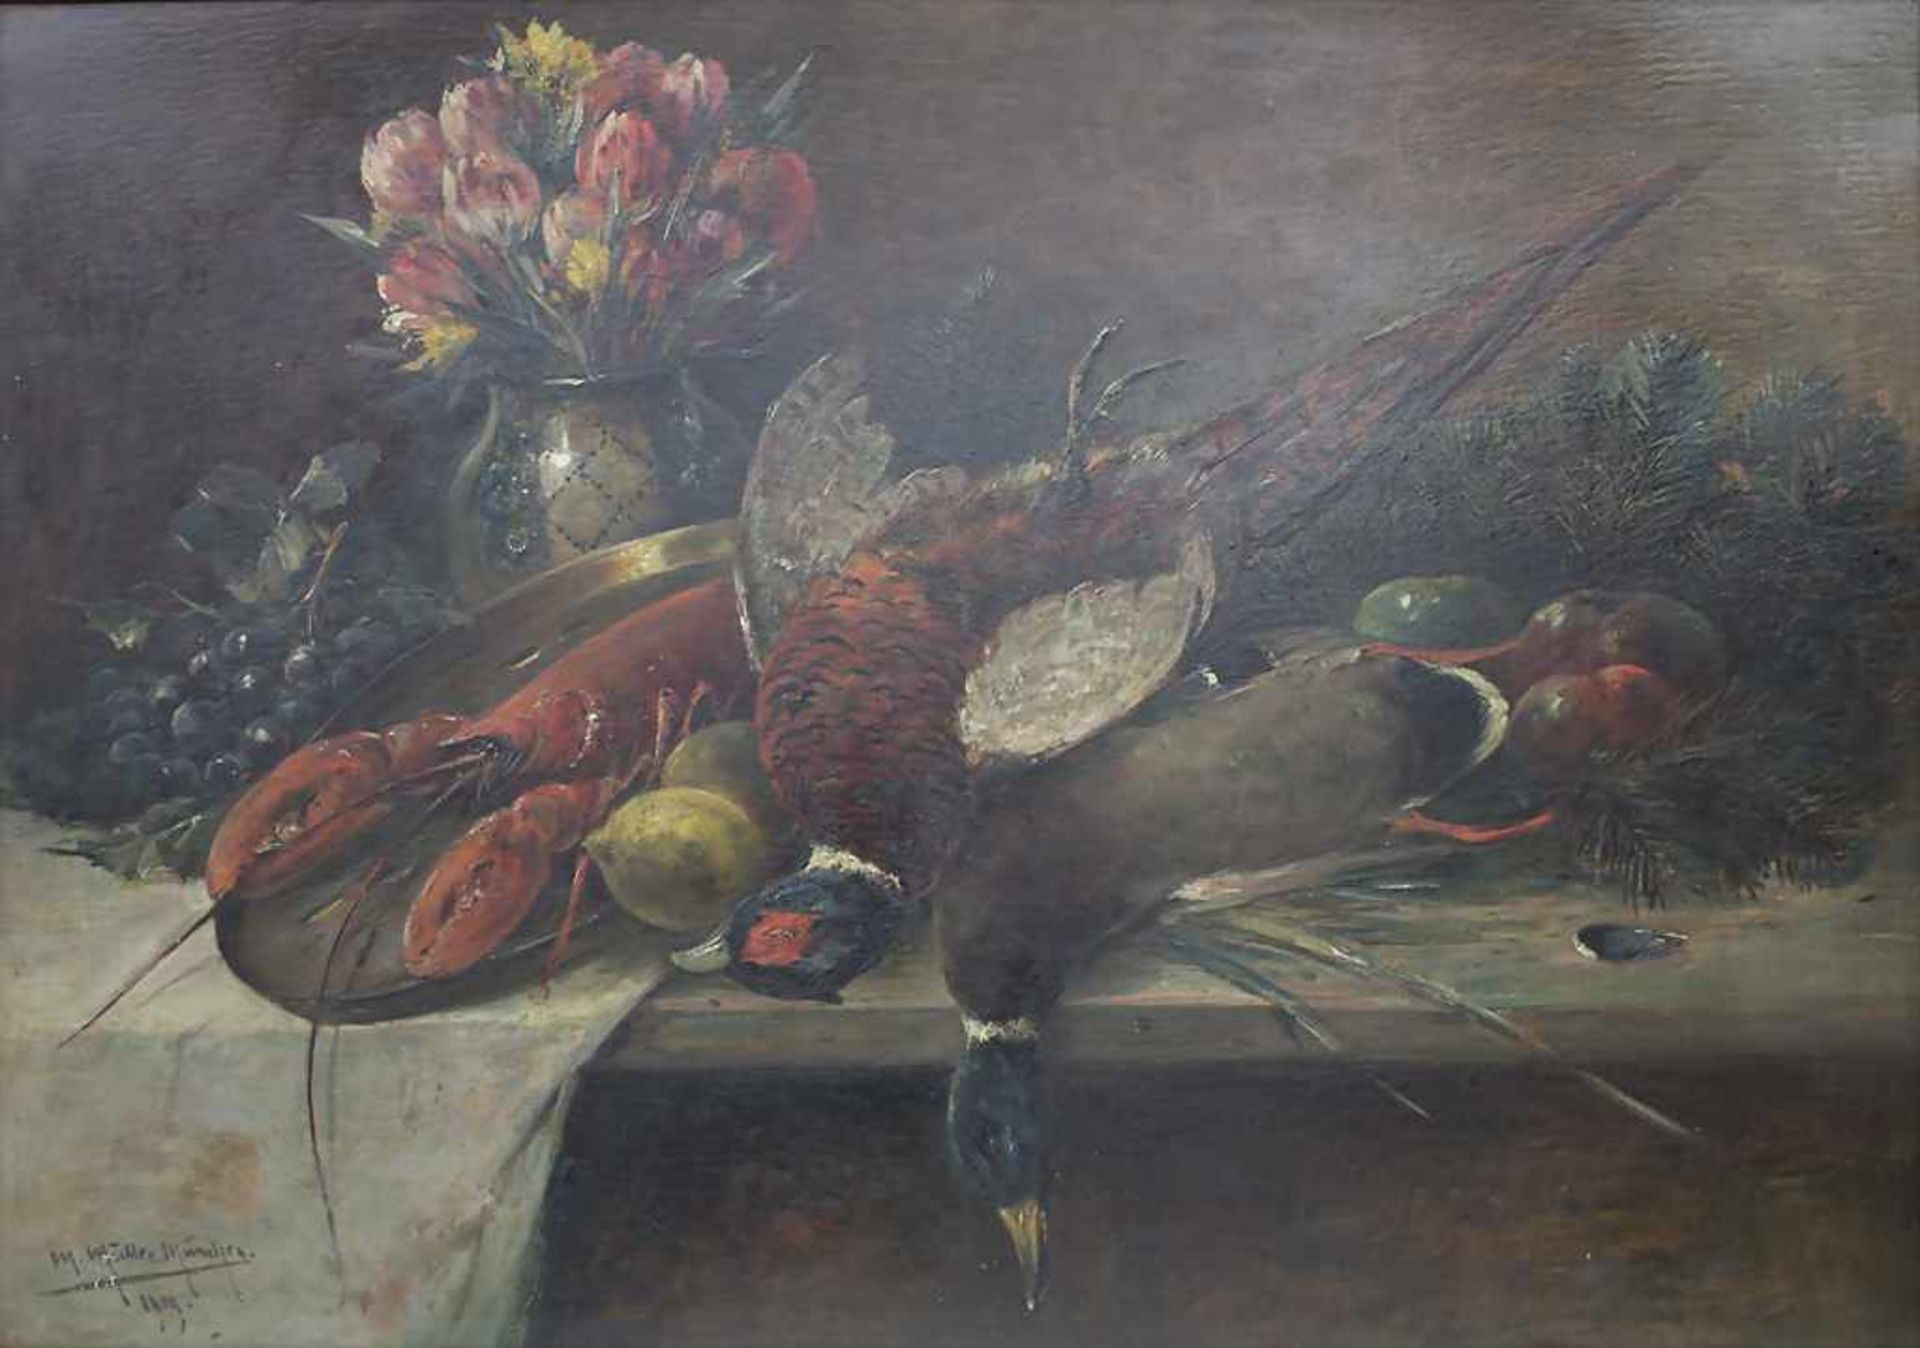 Moritz Müller (1869-1934), 'Stillleben mit Hummer und Fasan' / 'A still life with lobster and